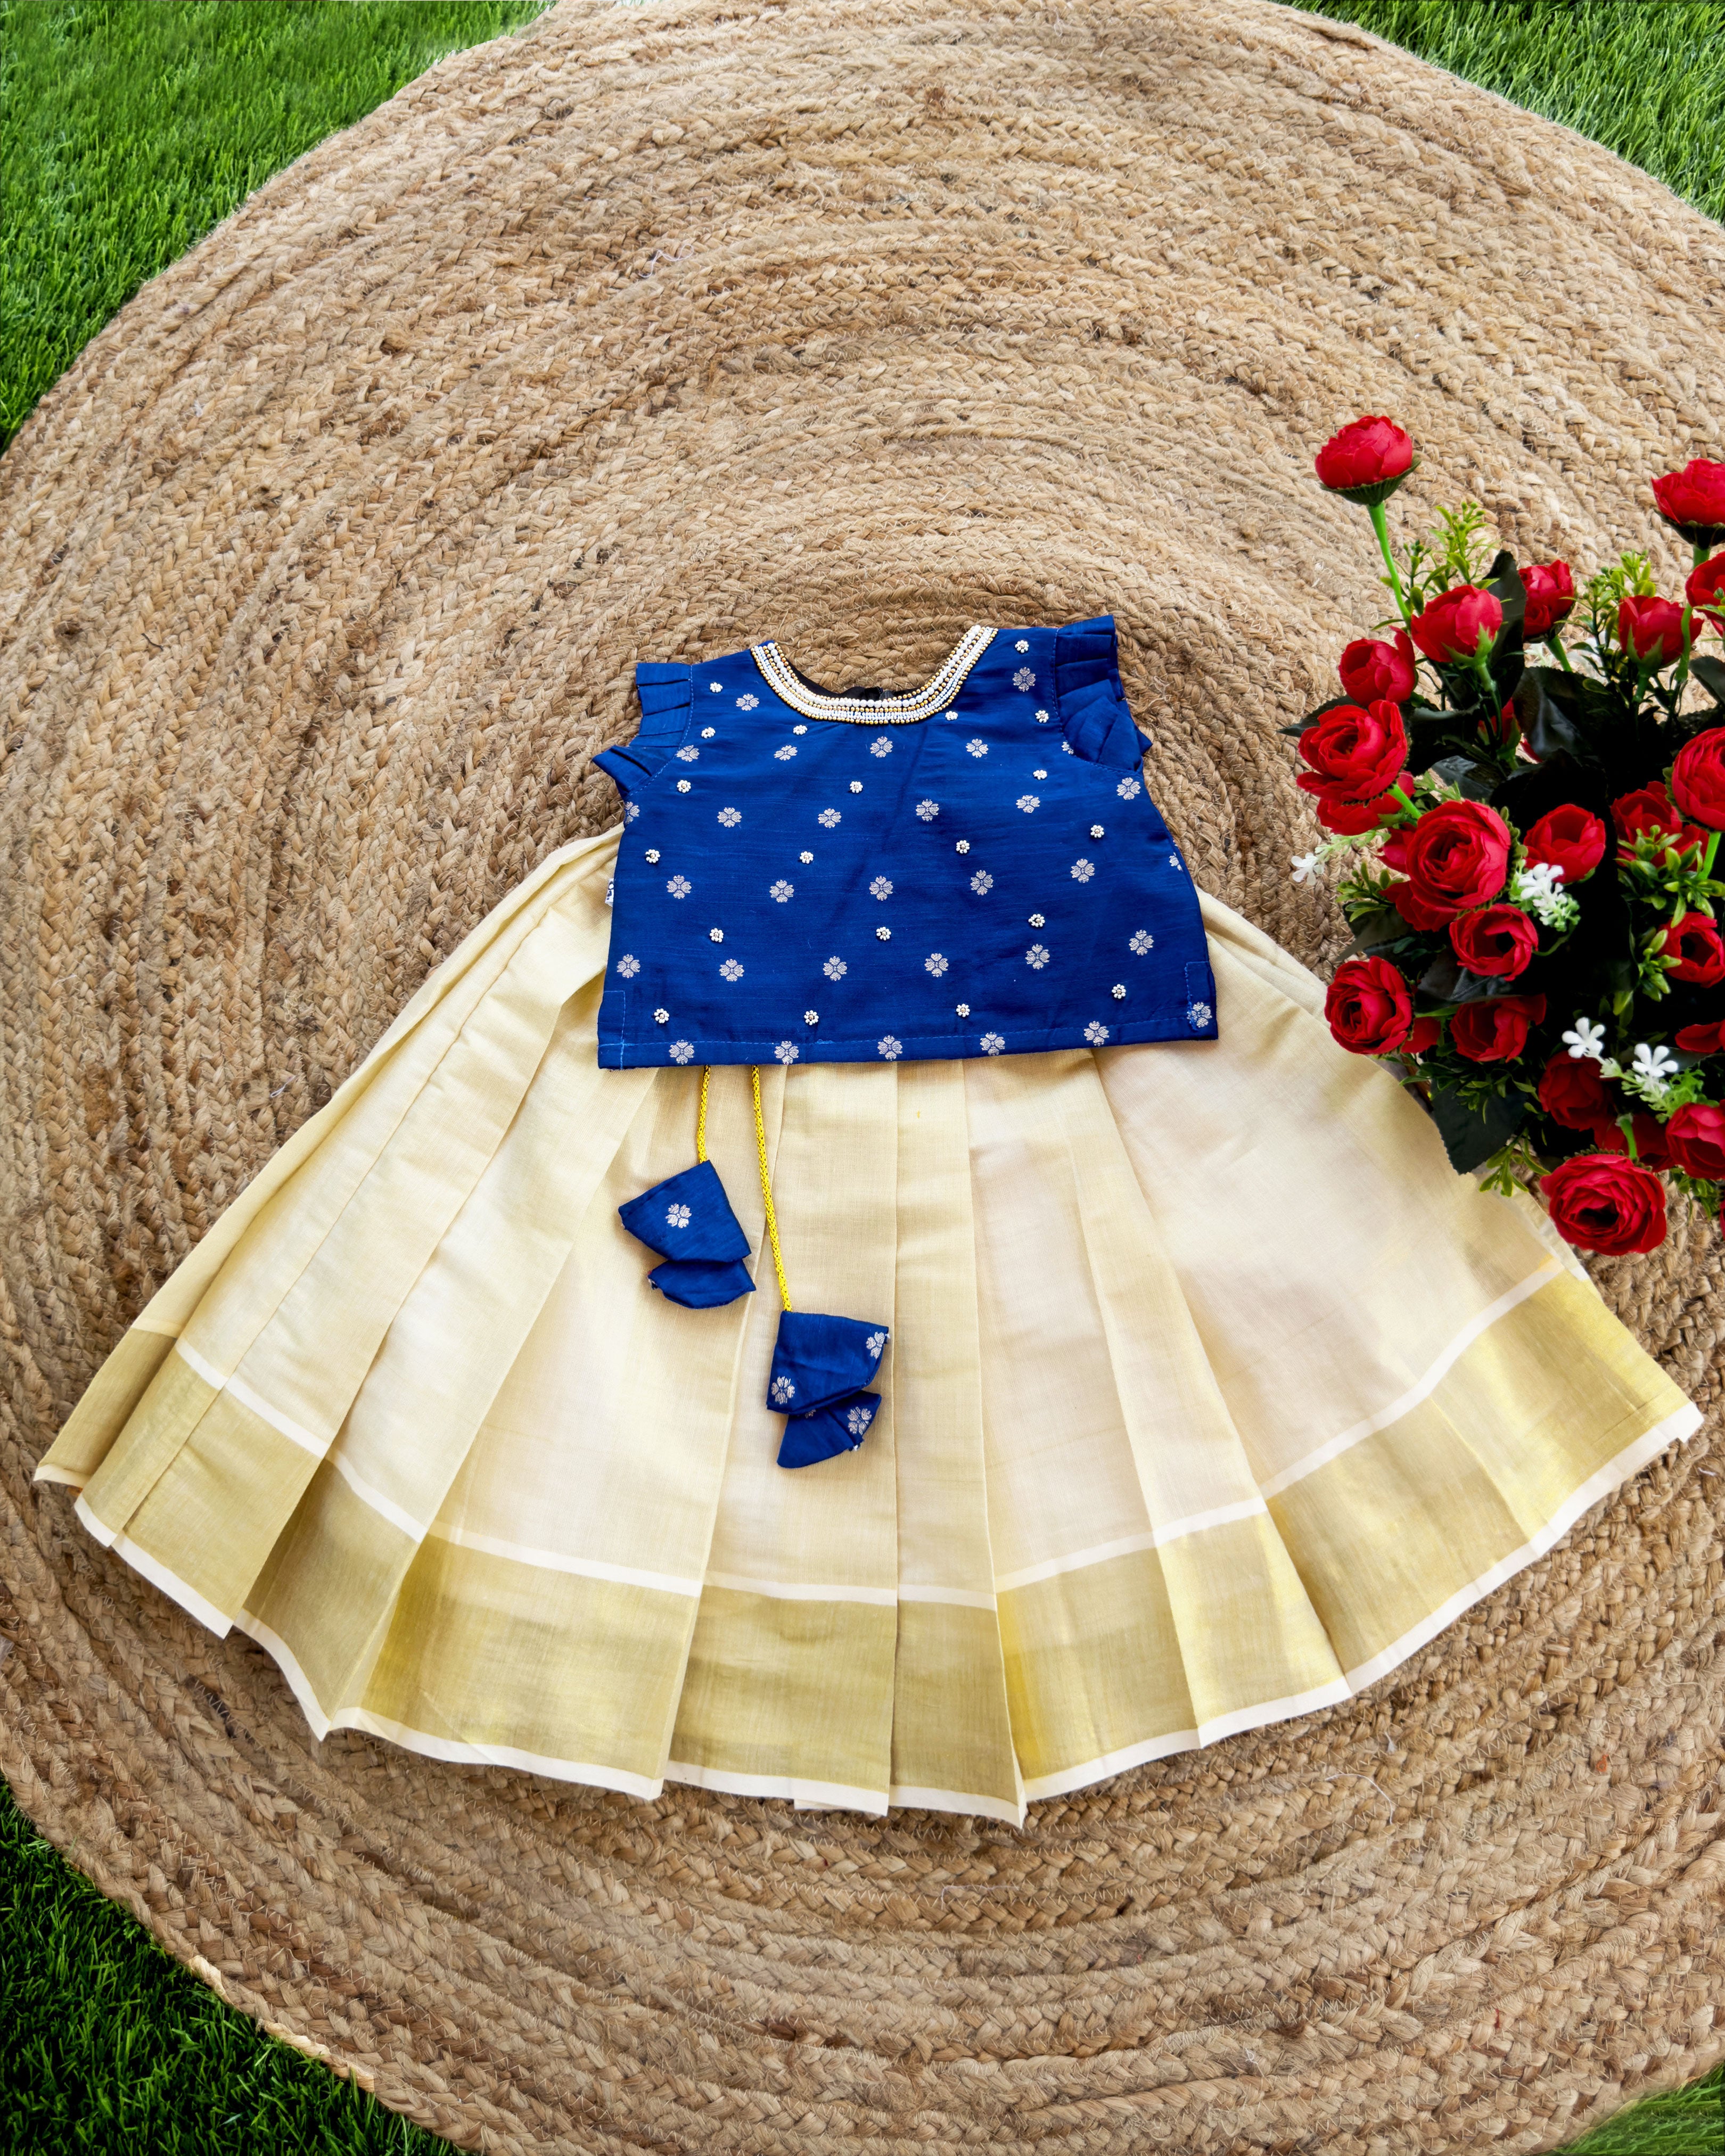 kerala lehenga navu blue colour traditional kids lehenga onam vishu dress 1